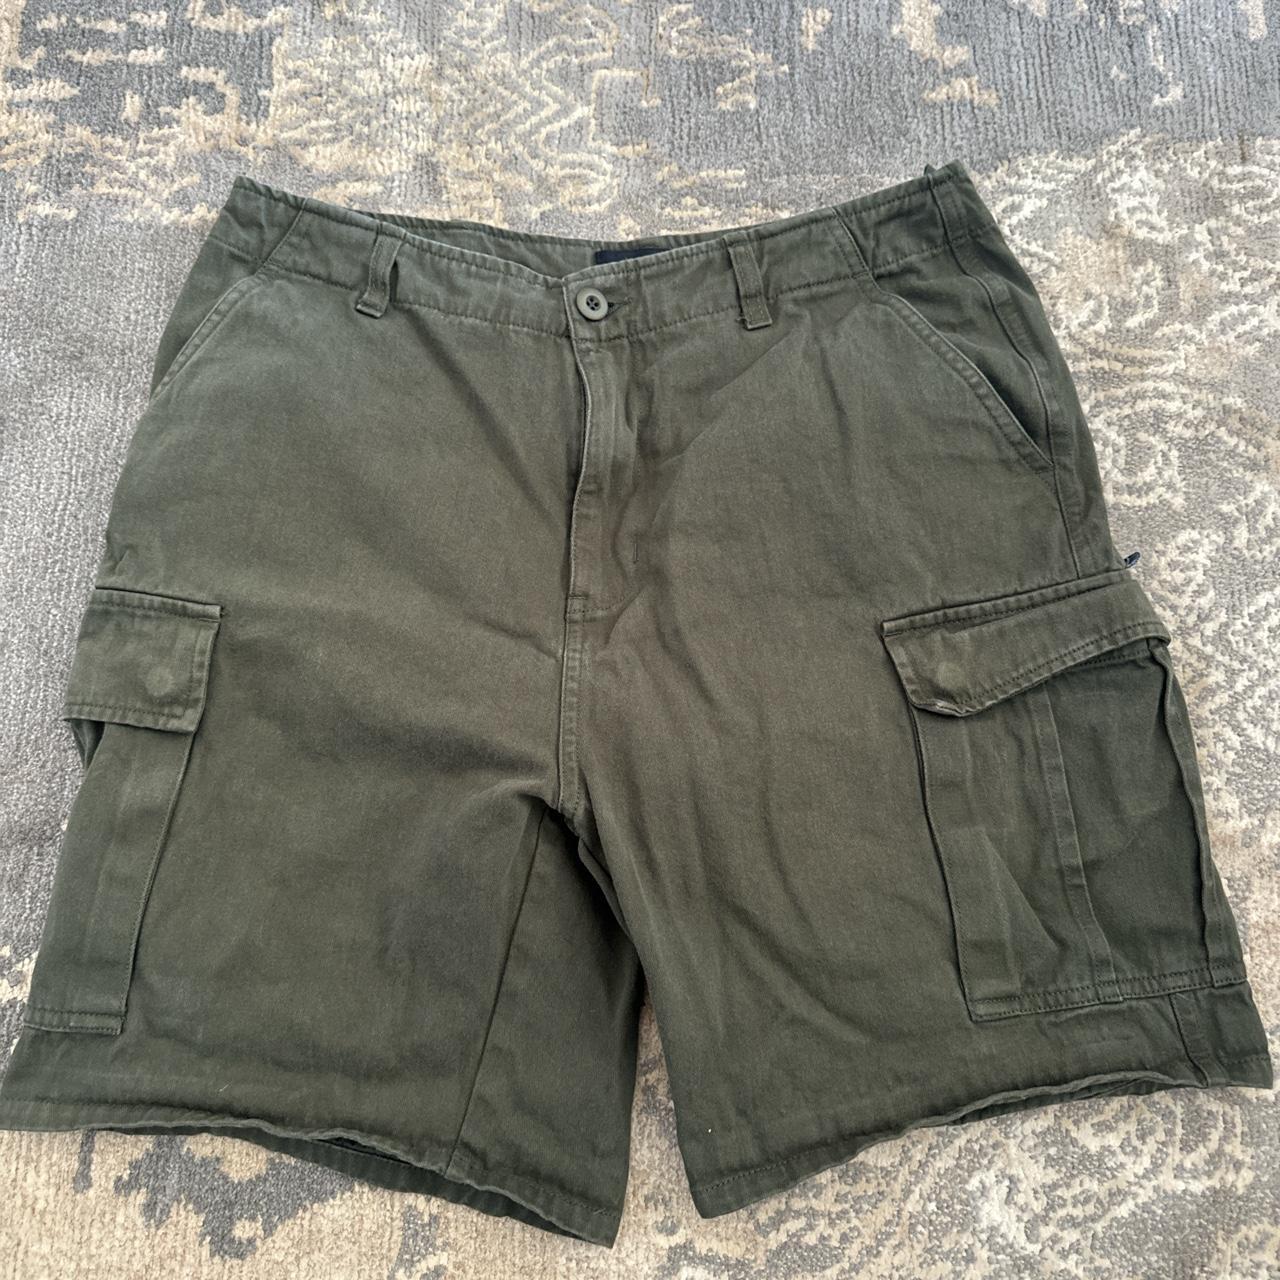 green stussy cargo shorts - mens worn a bit but... - Depop